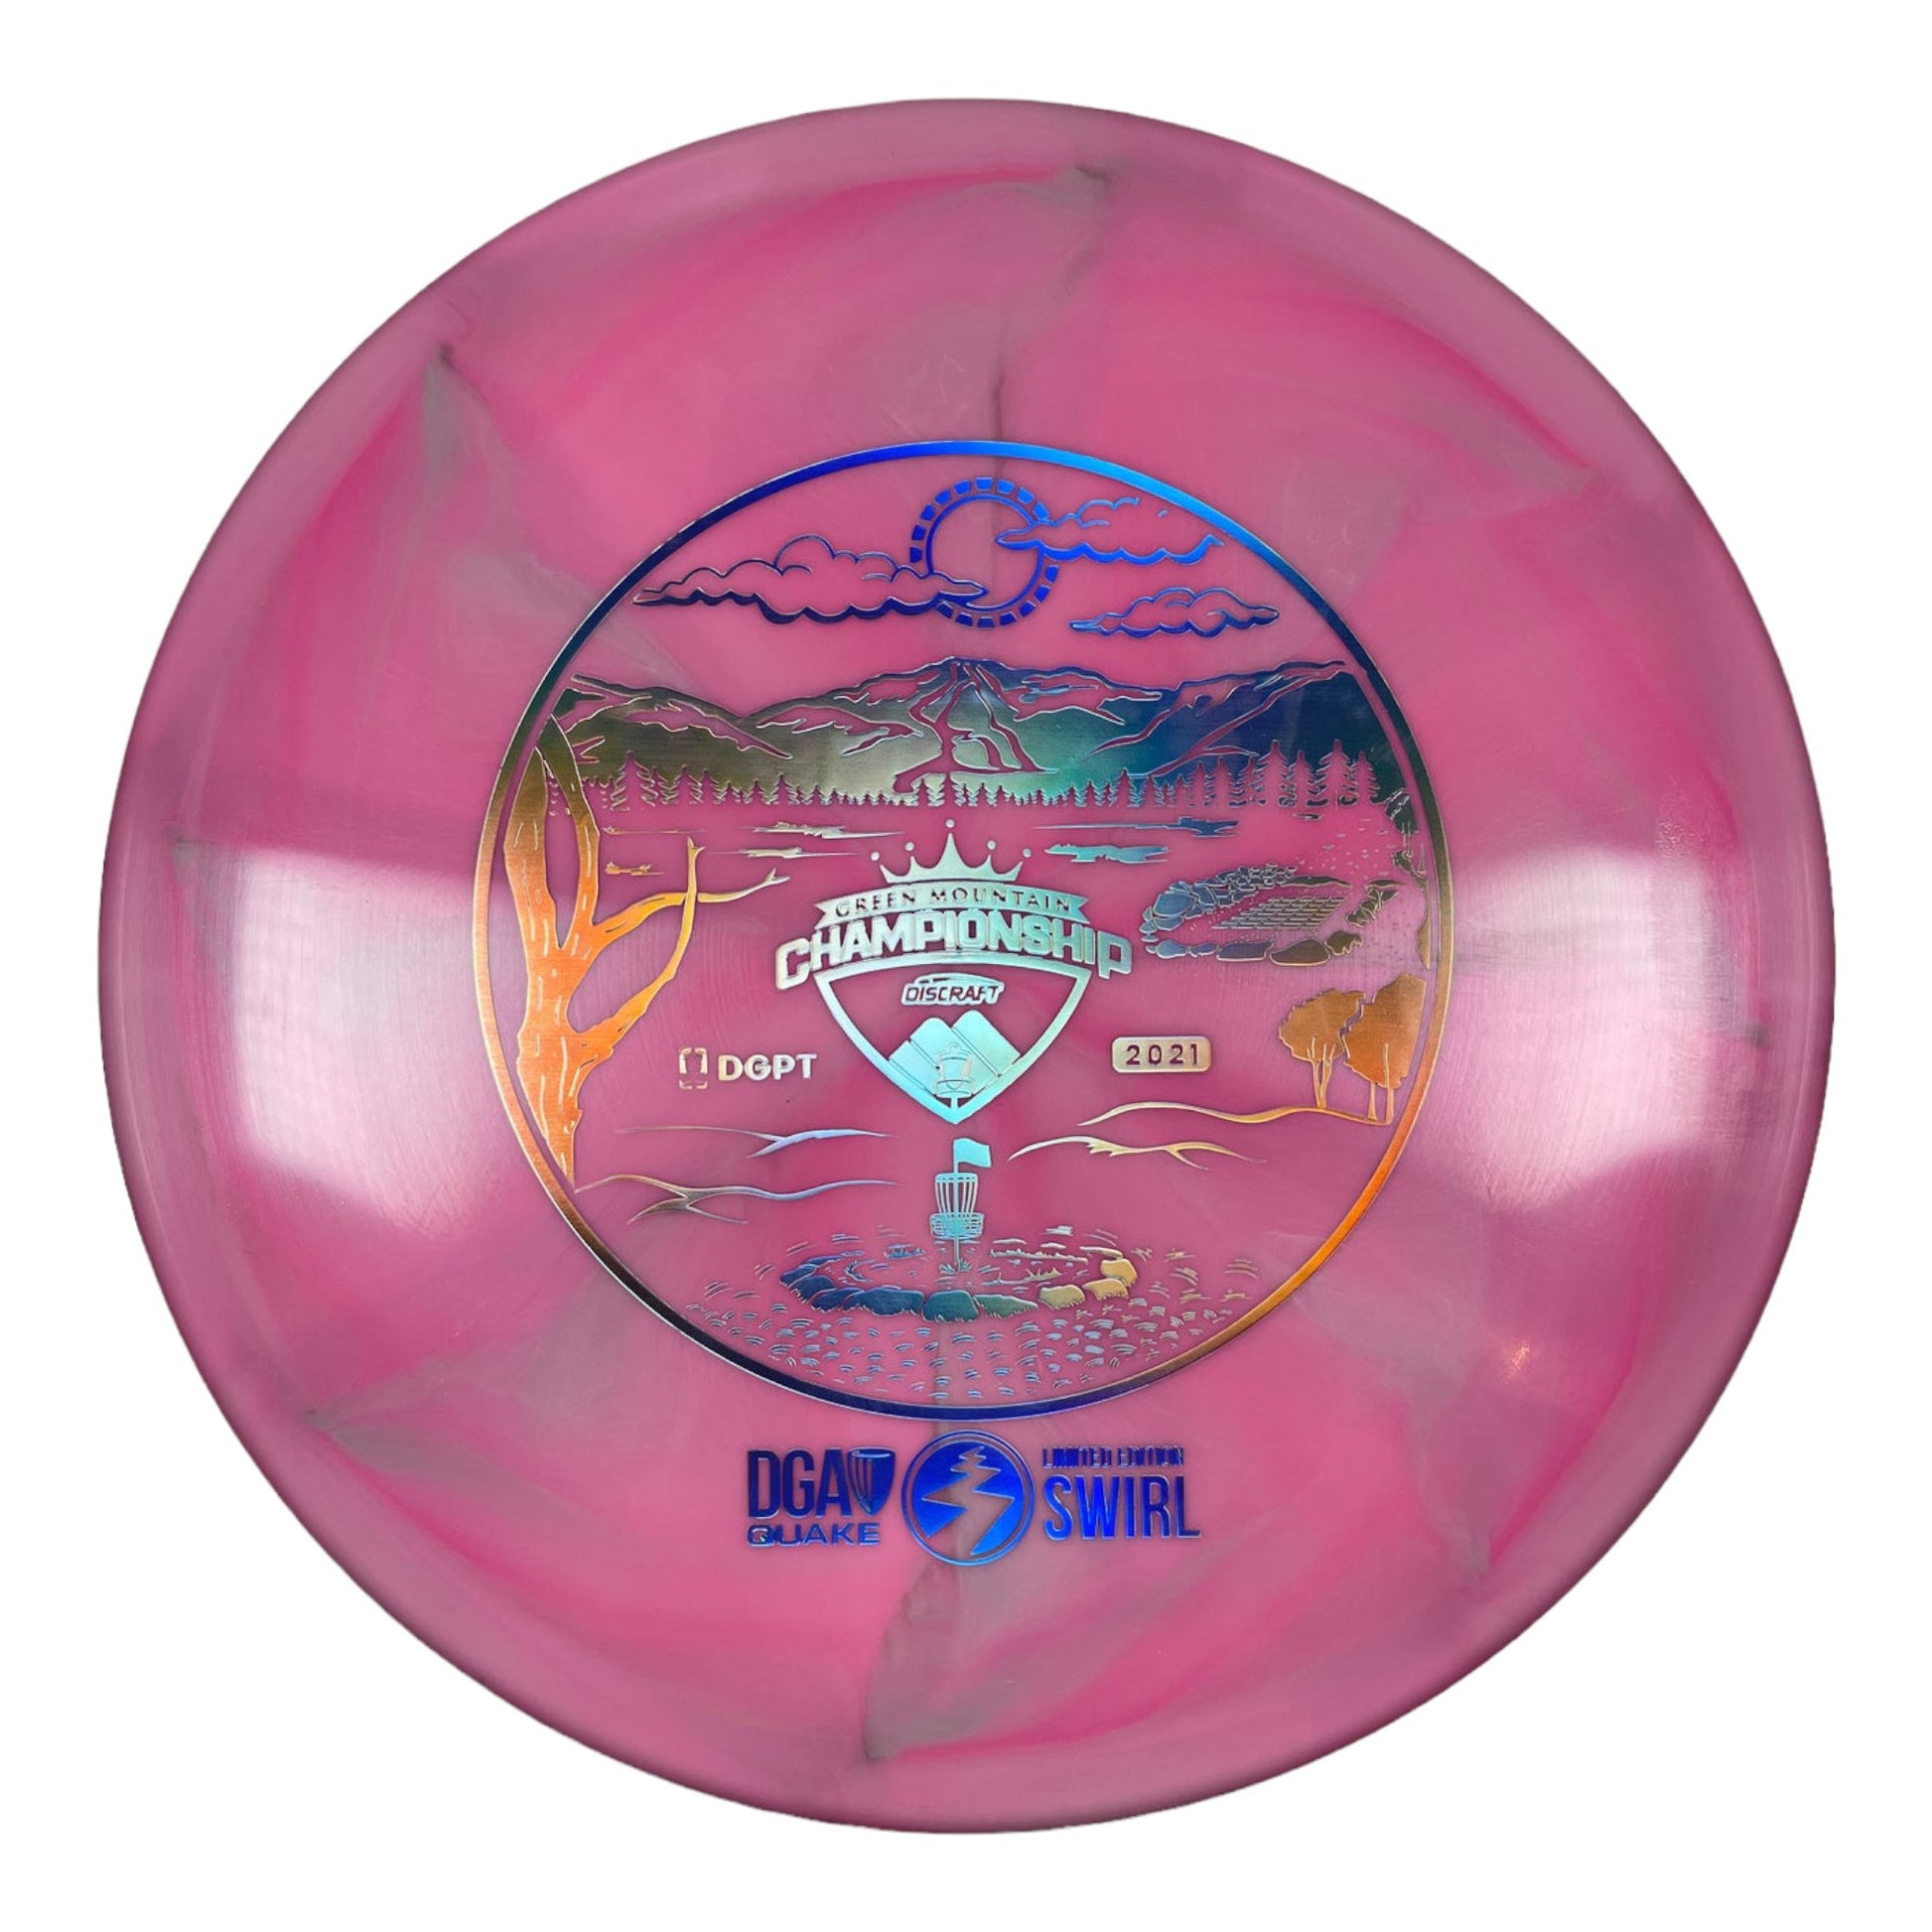 DGA Quake | Swirl | Pink/Holo 173g Disc Golf